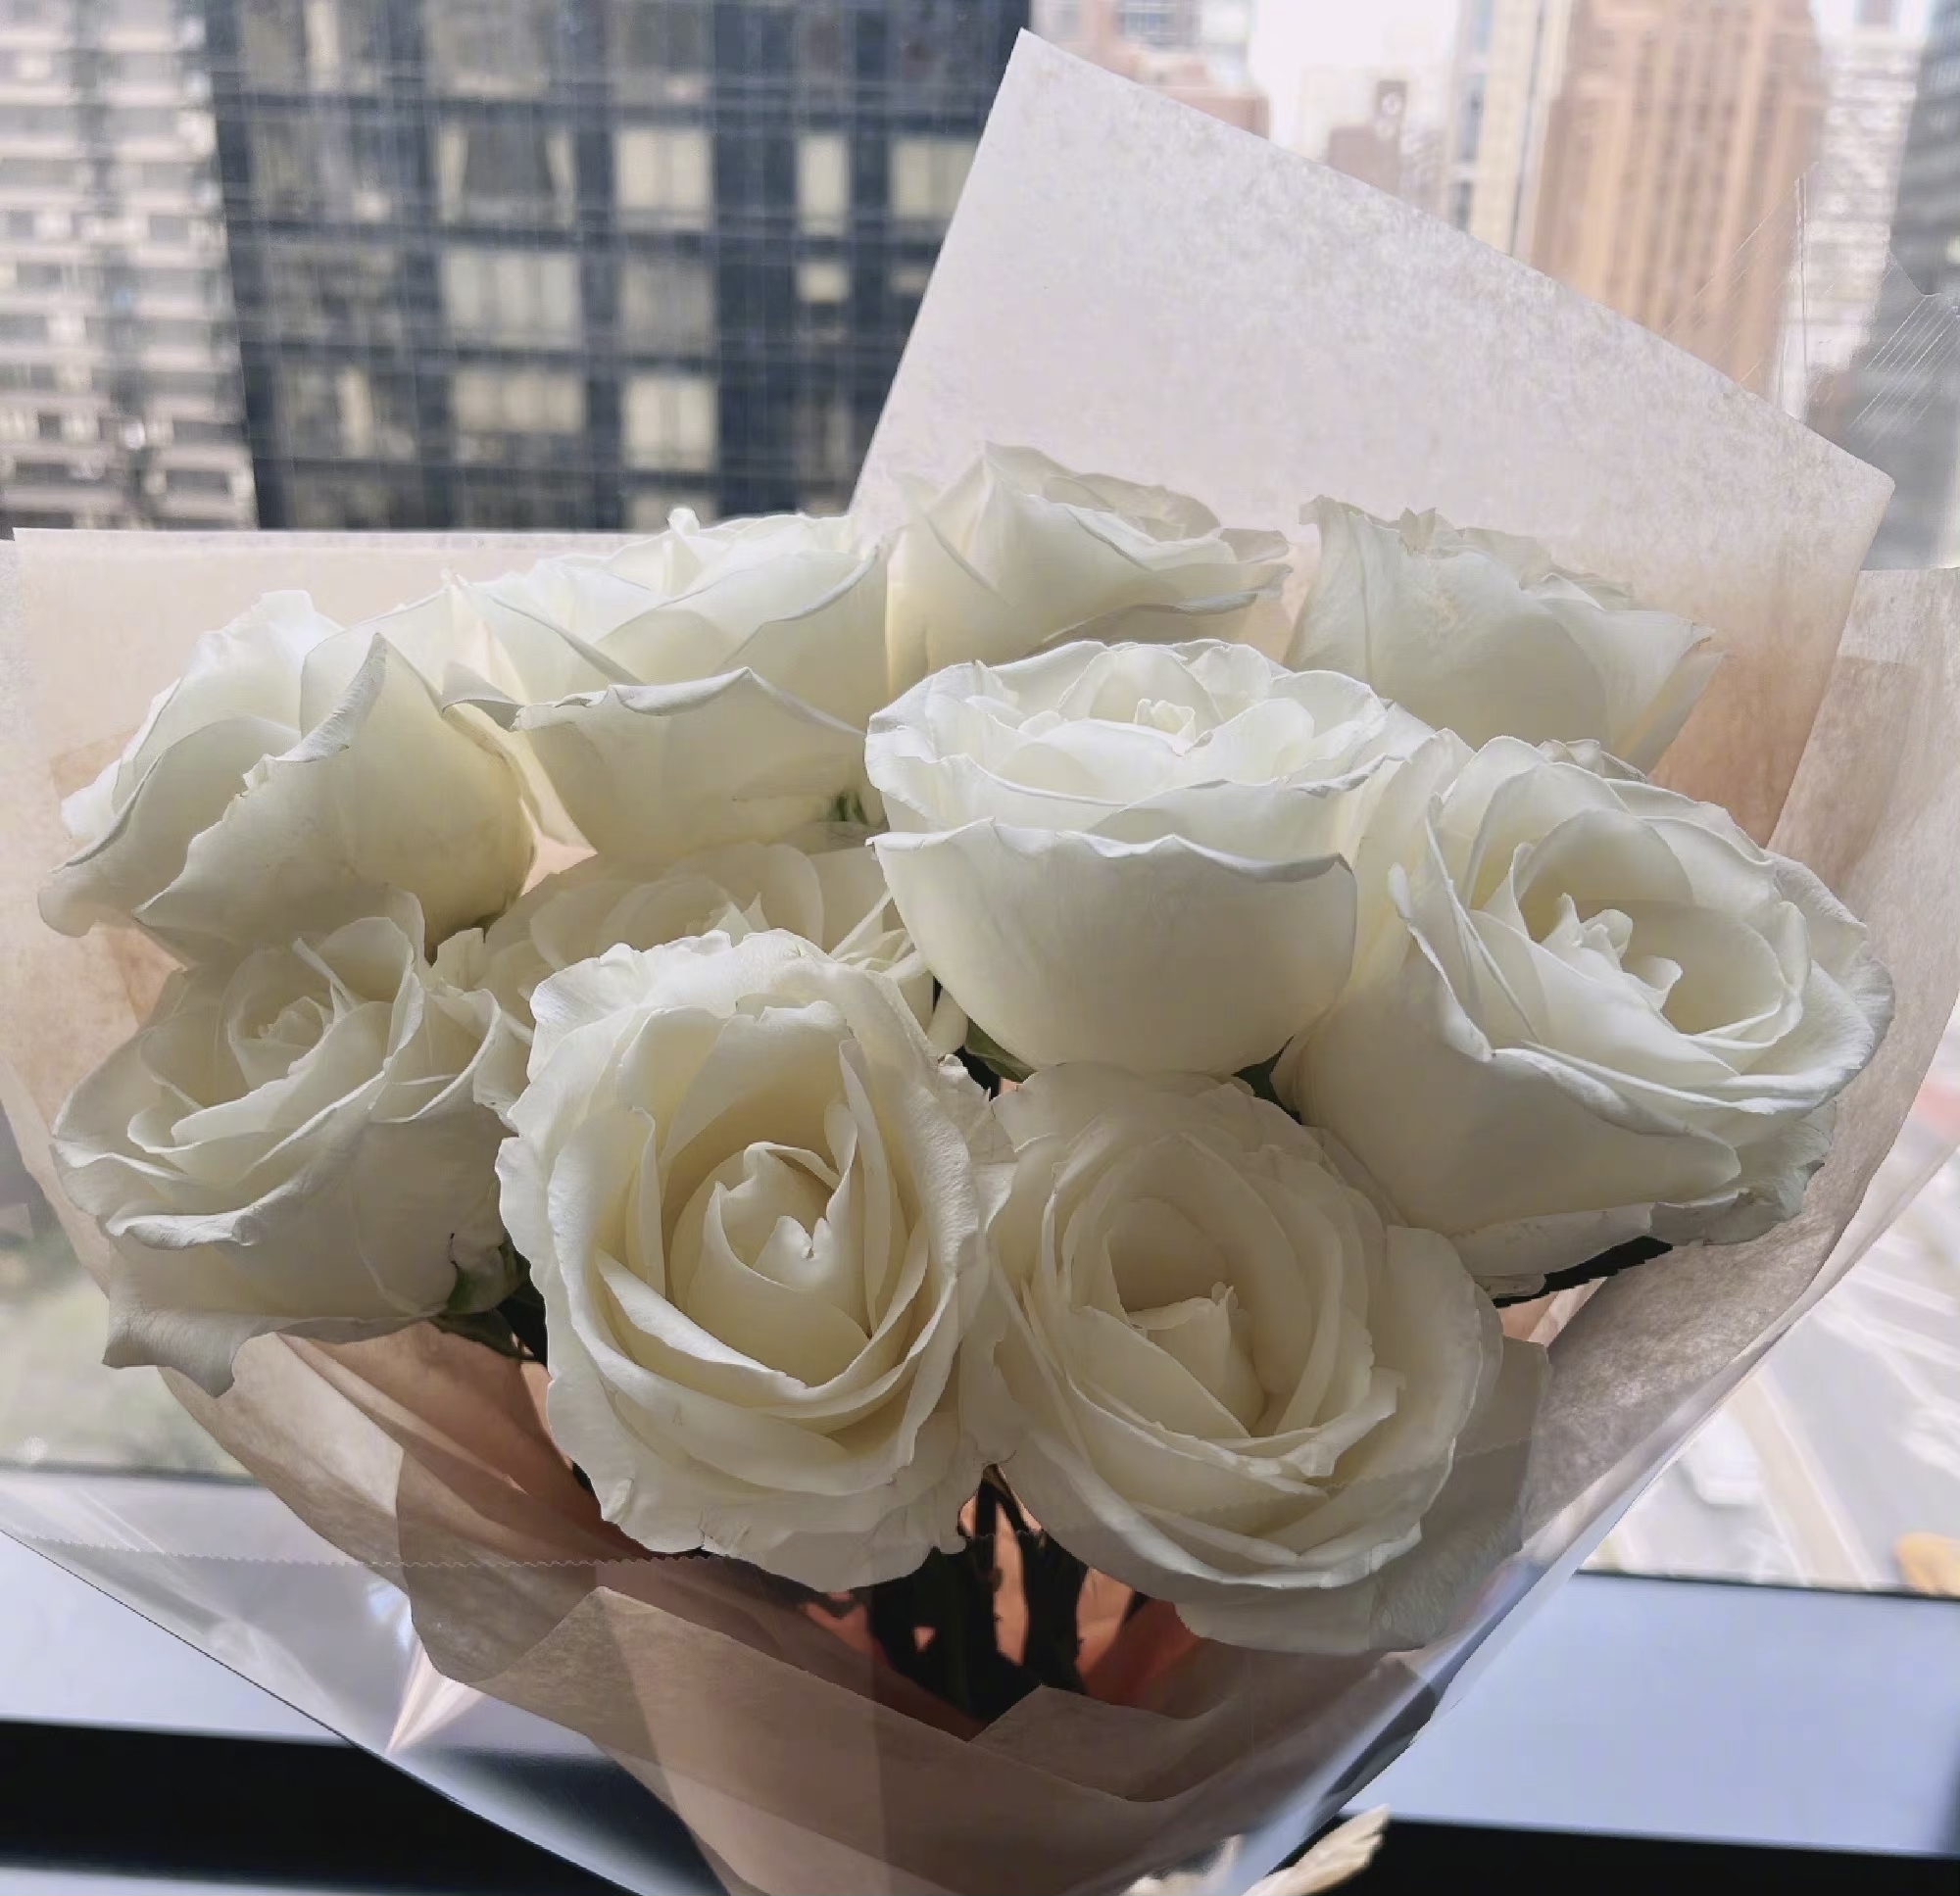 此外,哈文也买了一捧白色花束放在窗边寄托哀思,希望远在天堂的丈夫